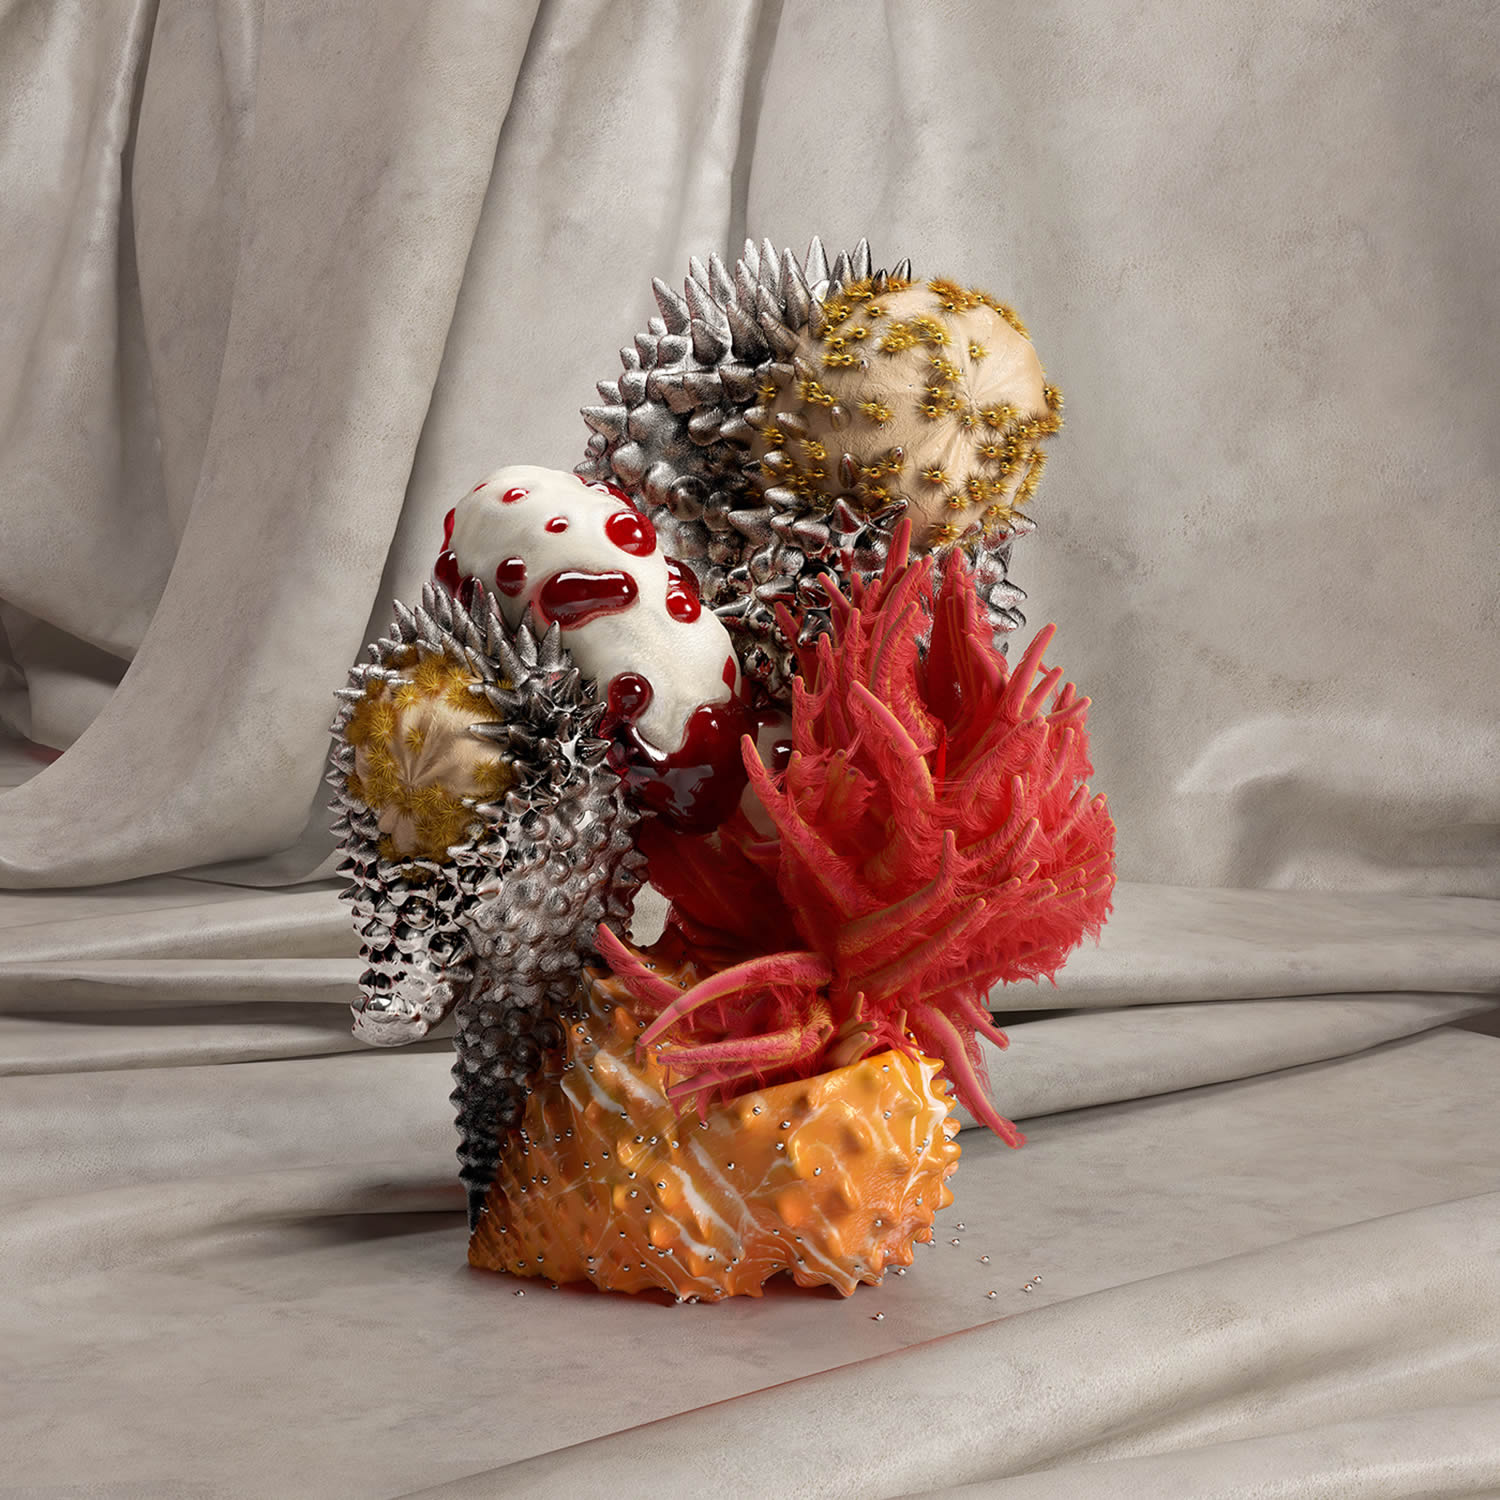 fruit like, morbo, digital art by six & five studio